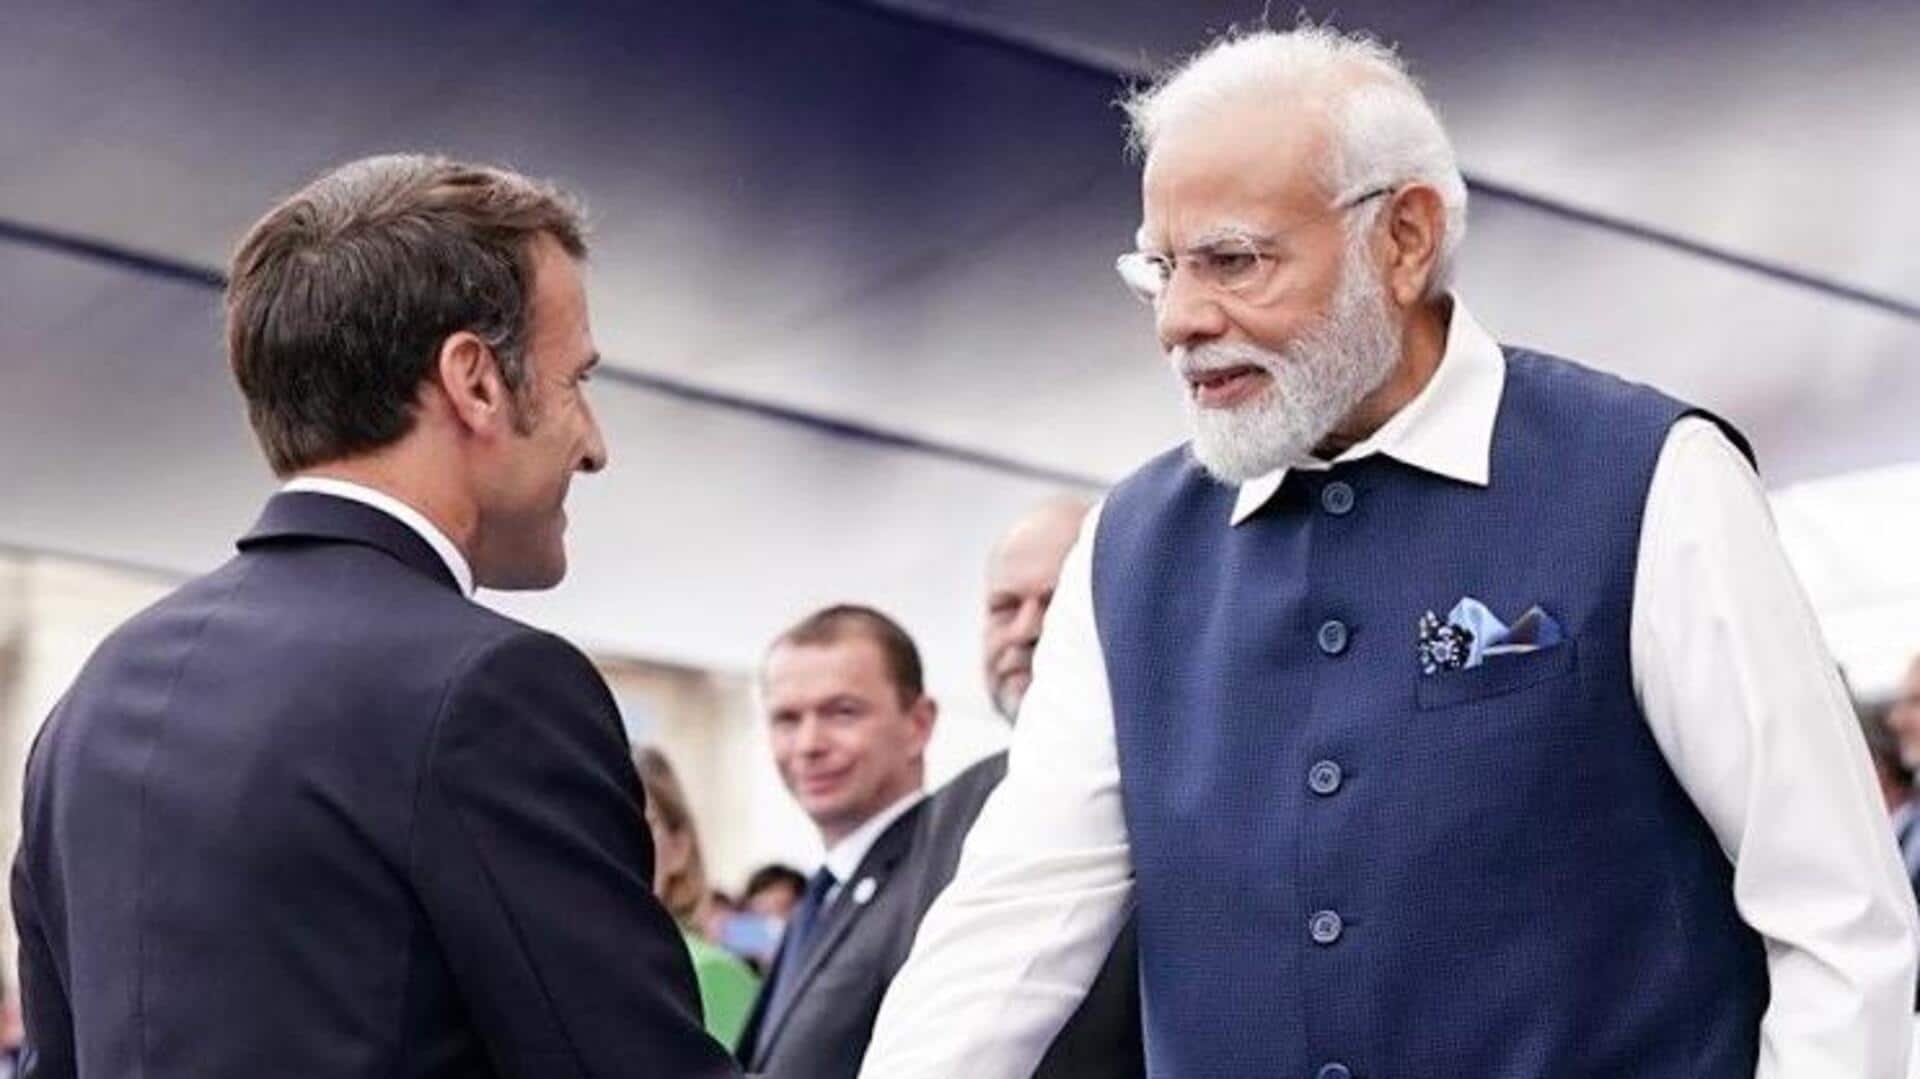 फ्रांस: बैस्टिल डे परेड में शामिल हुए प्रधानमंत्री मोदी, आसमान में भारतीय राफेल लड़ाकू विमान उड़ा